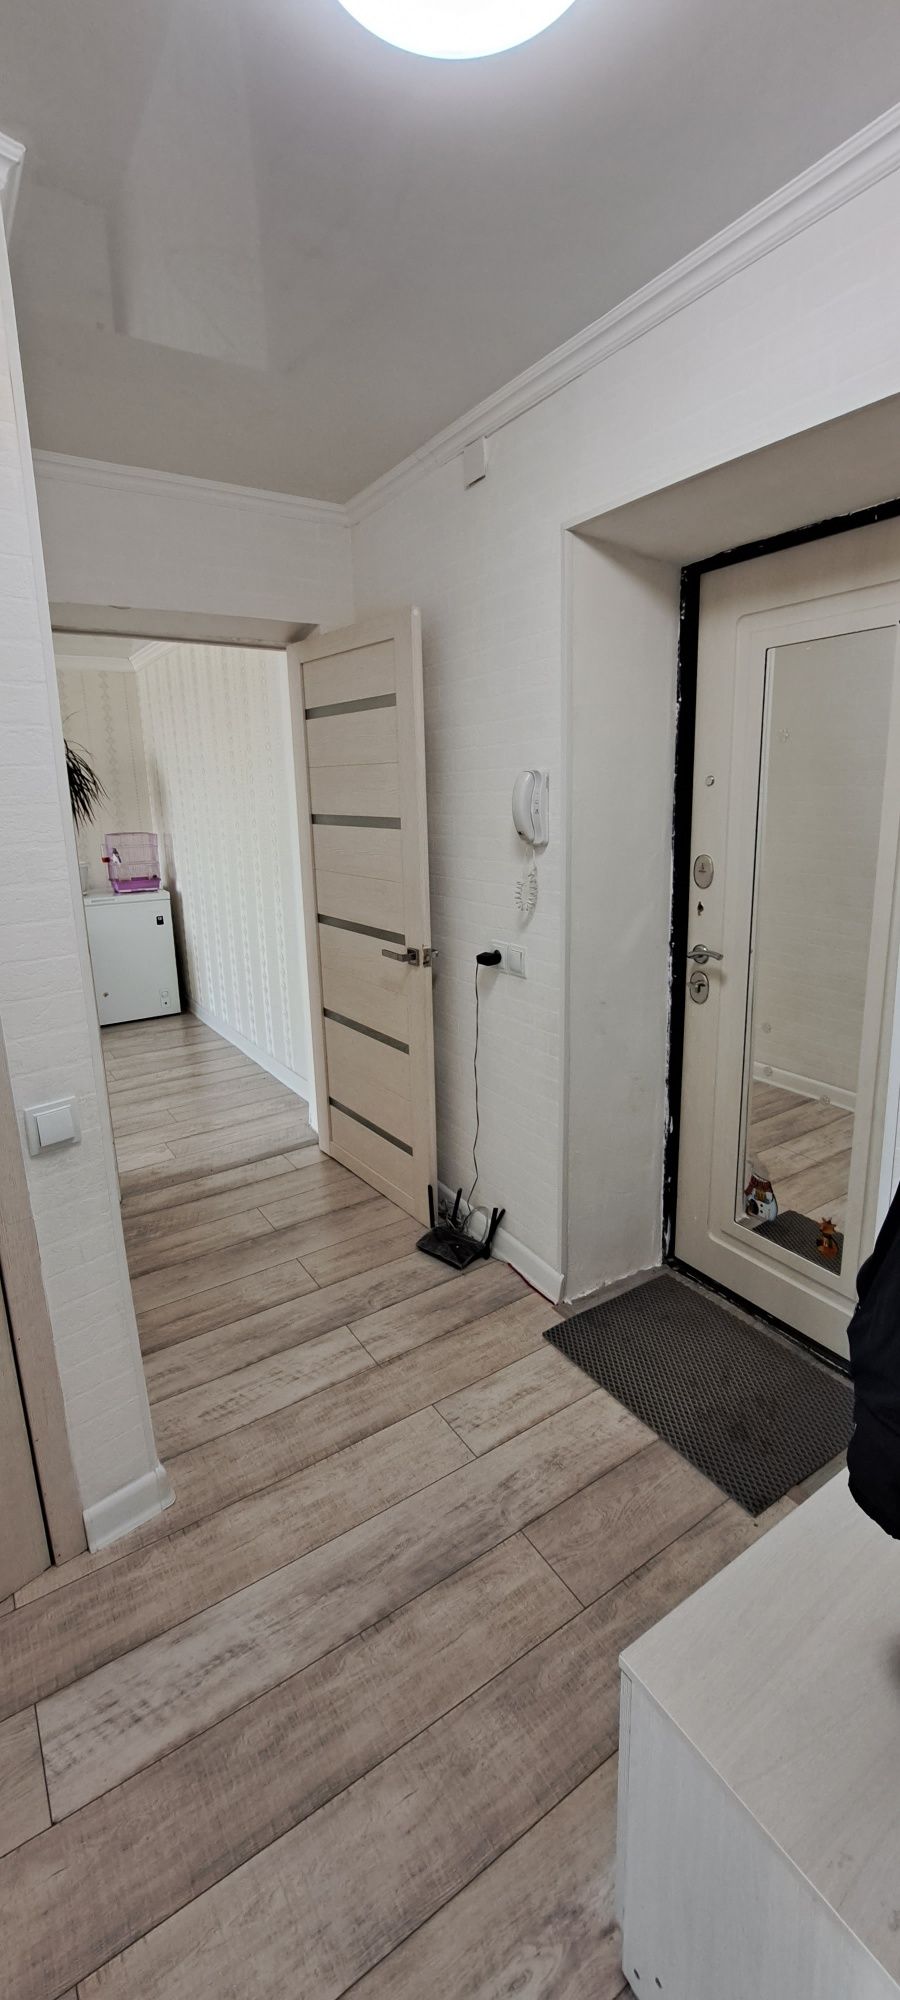 Продам квартиру  в Майкудуке 14мкр 22 дом  2-× комнатную с ремонтом